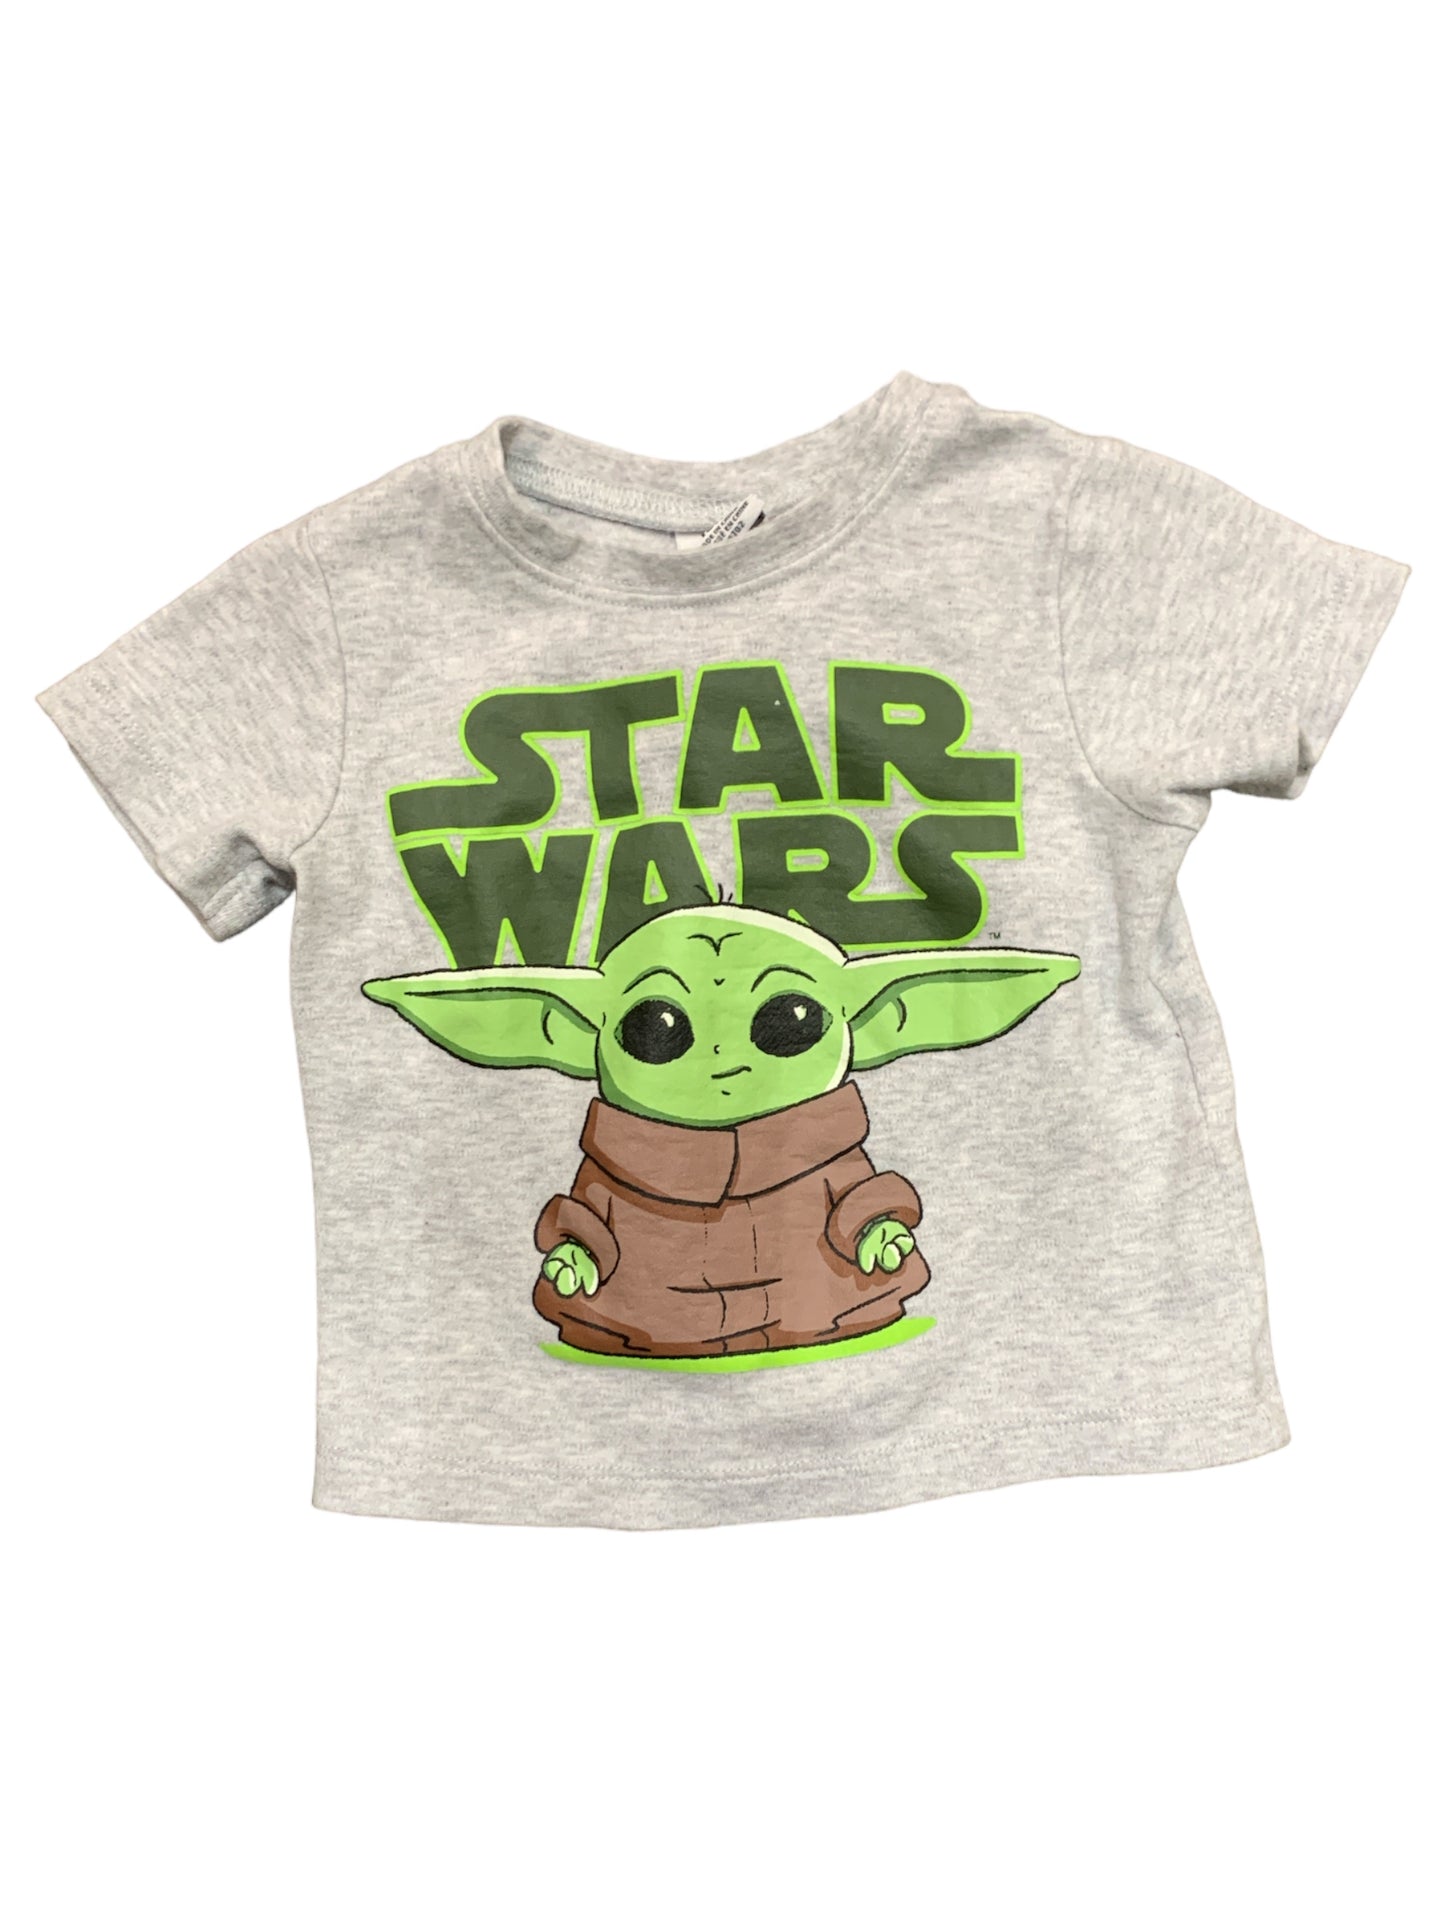 Baby Yoda T-Shirt Size 18m